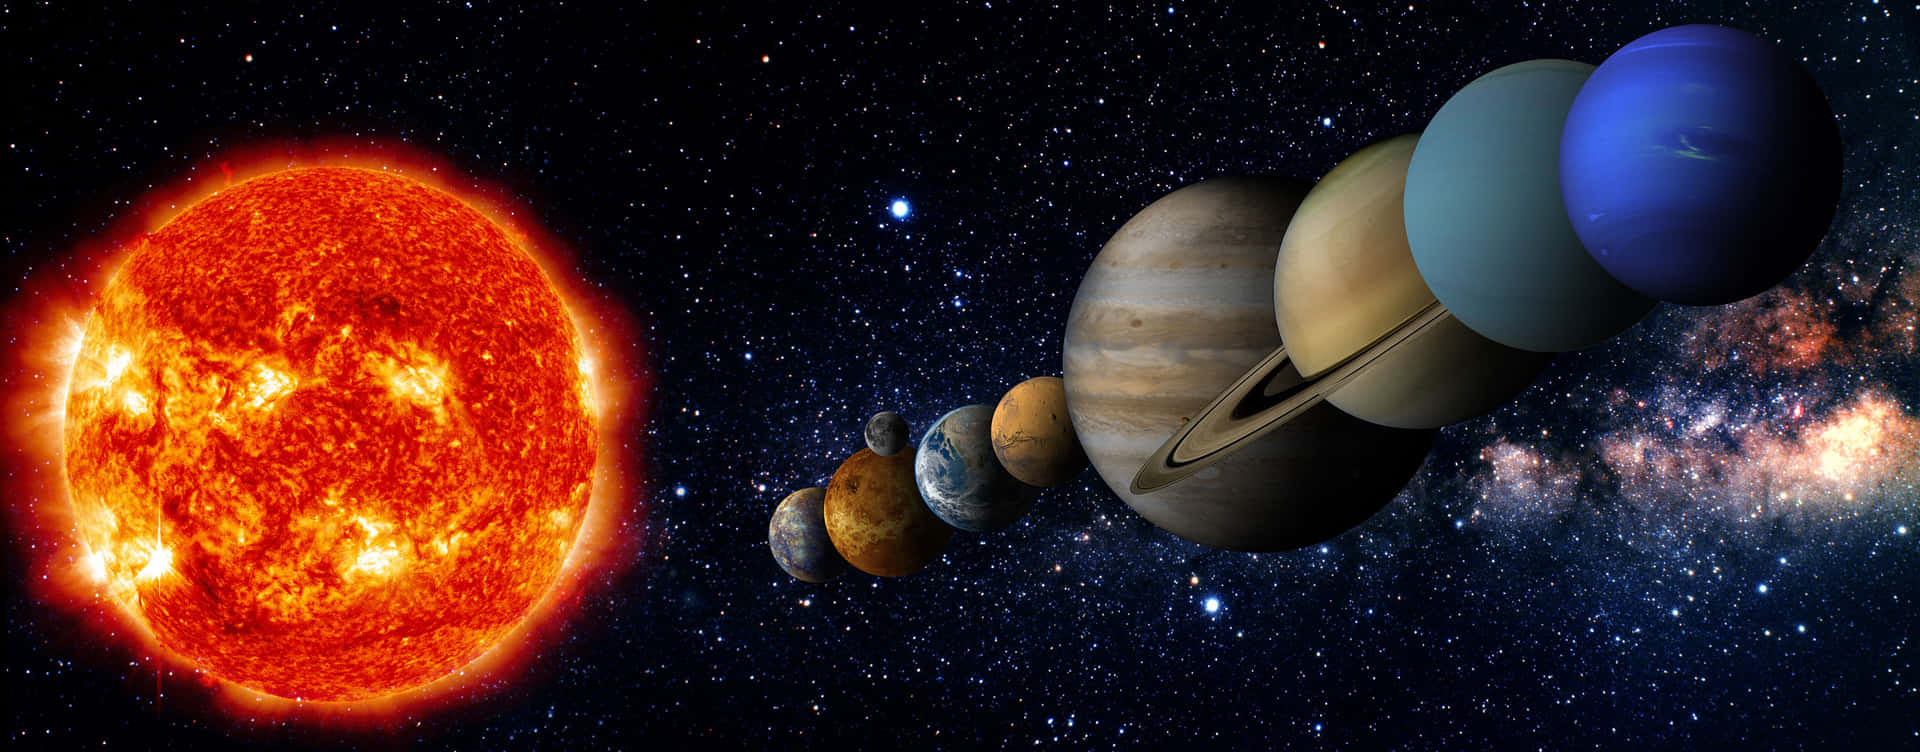 Planetenin Einer Reihe Im Bild Des Sonnensystems.